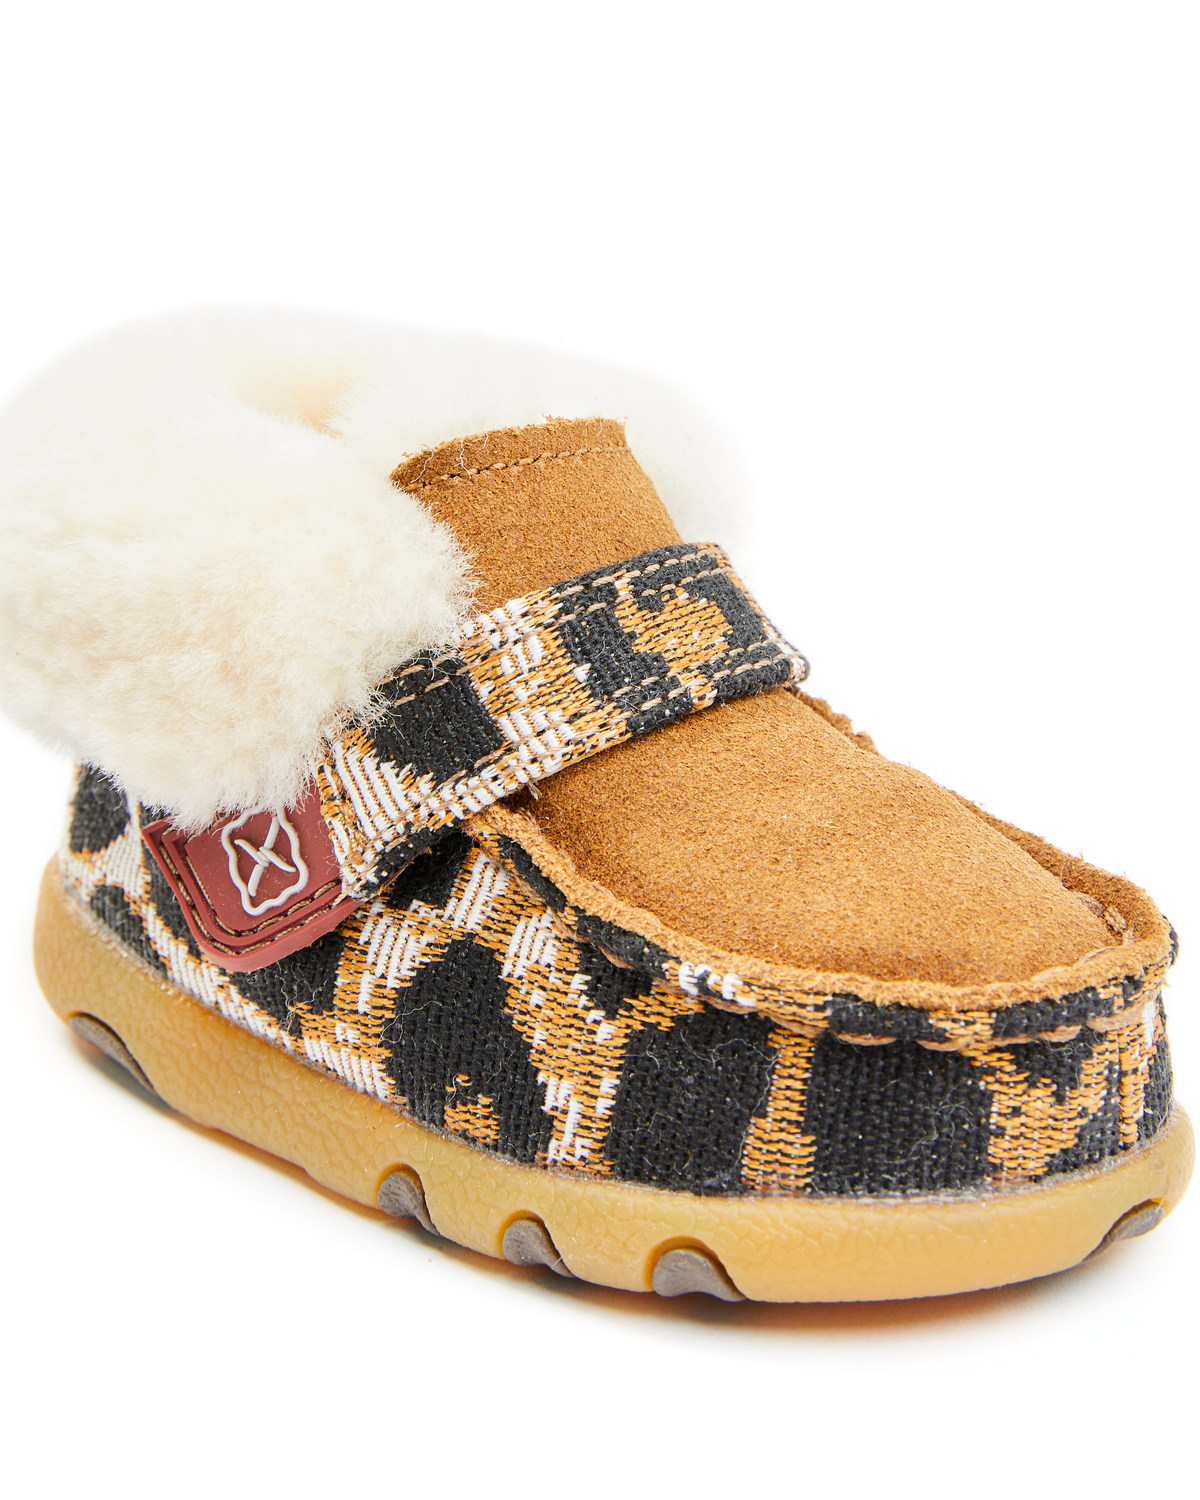 Twisted X Infant Girls' Cheetah Print Shoes - Moc Toe